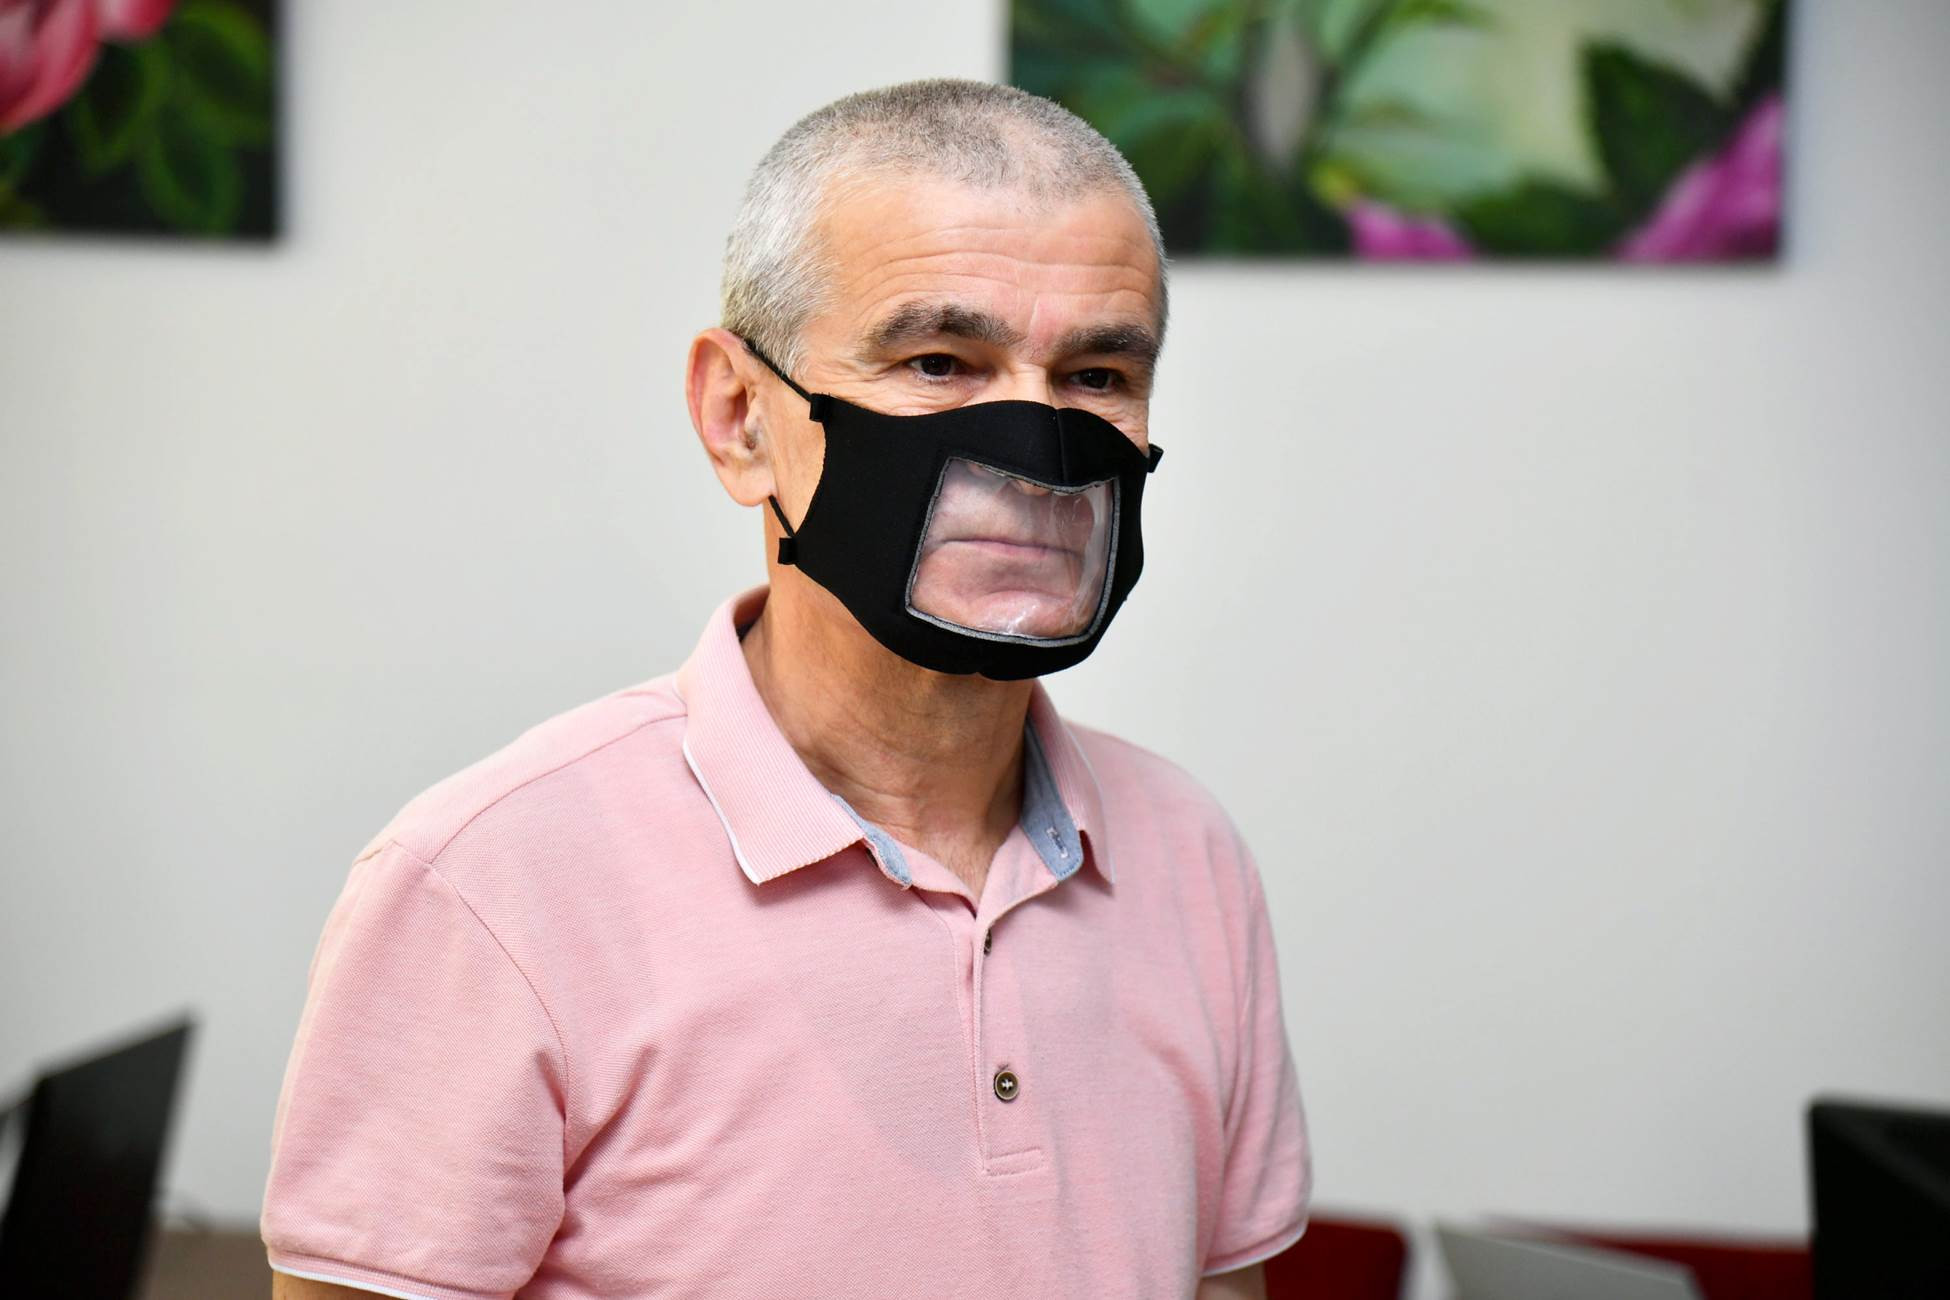 Isparta Belediyesi işitme engelliler için şeffaf yıkanabilir maske üretti